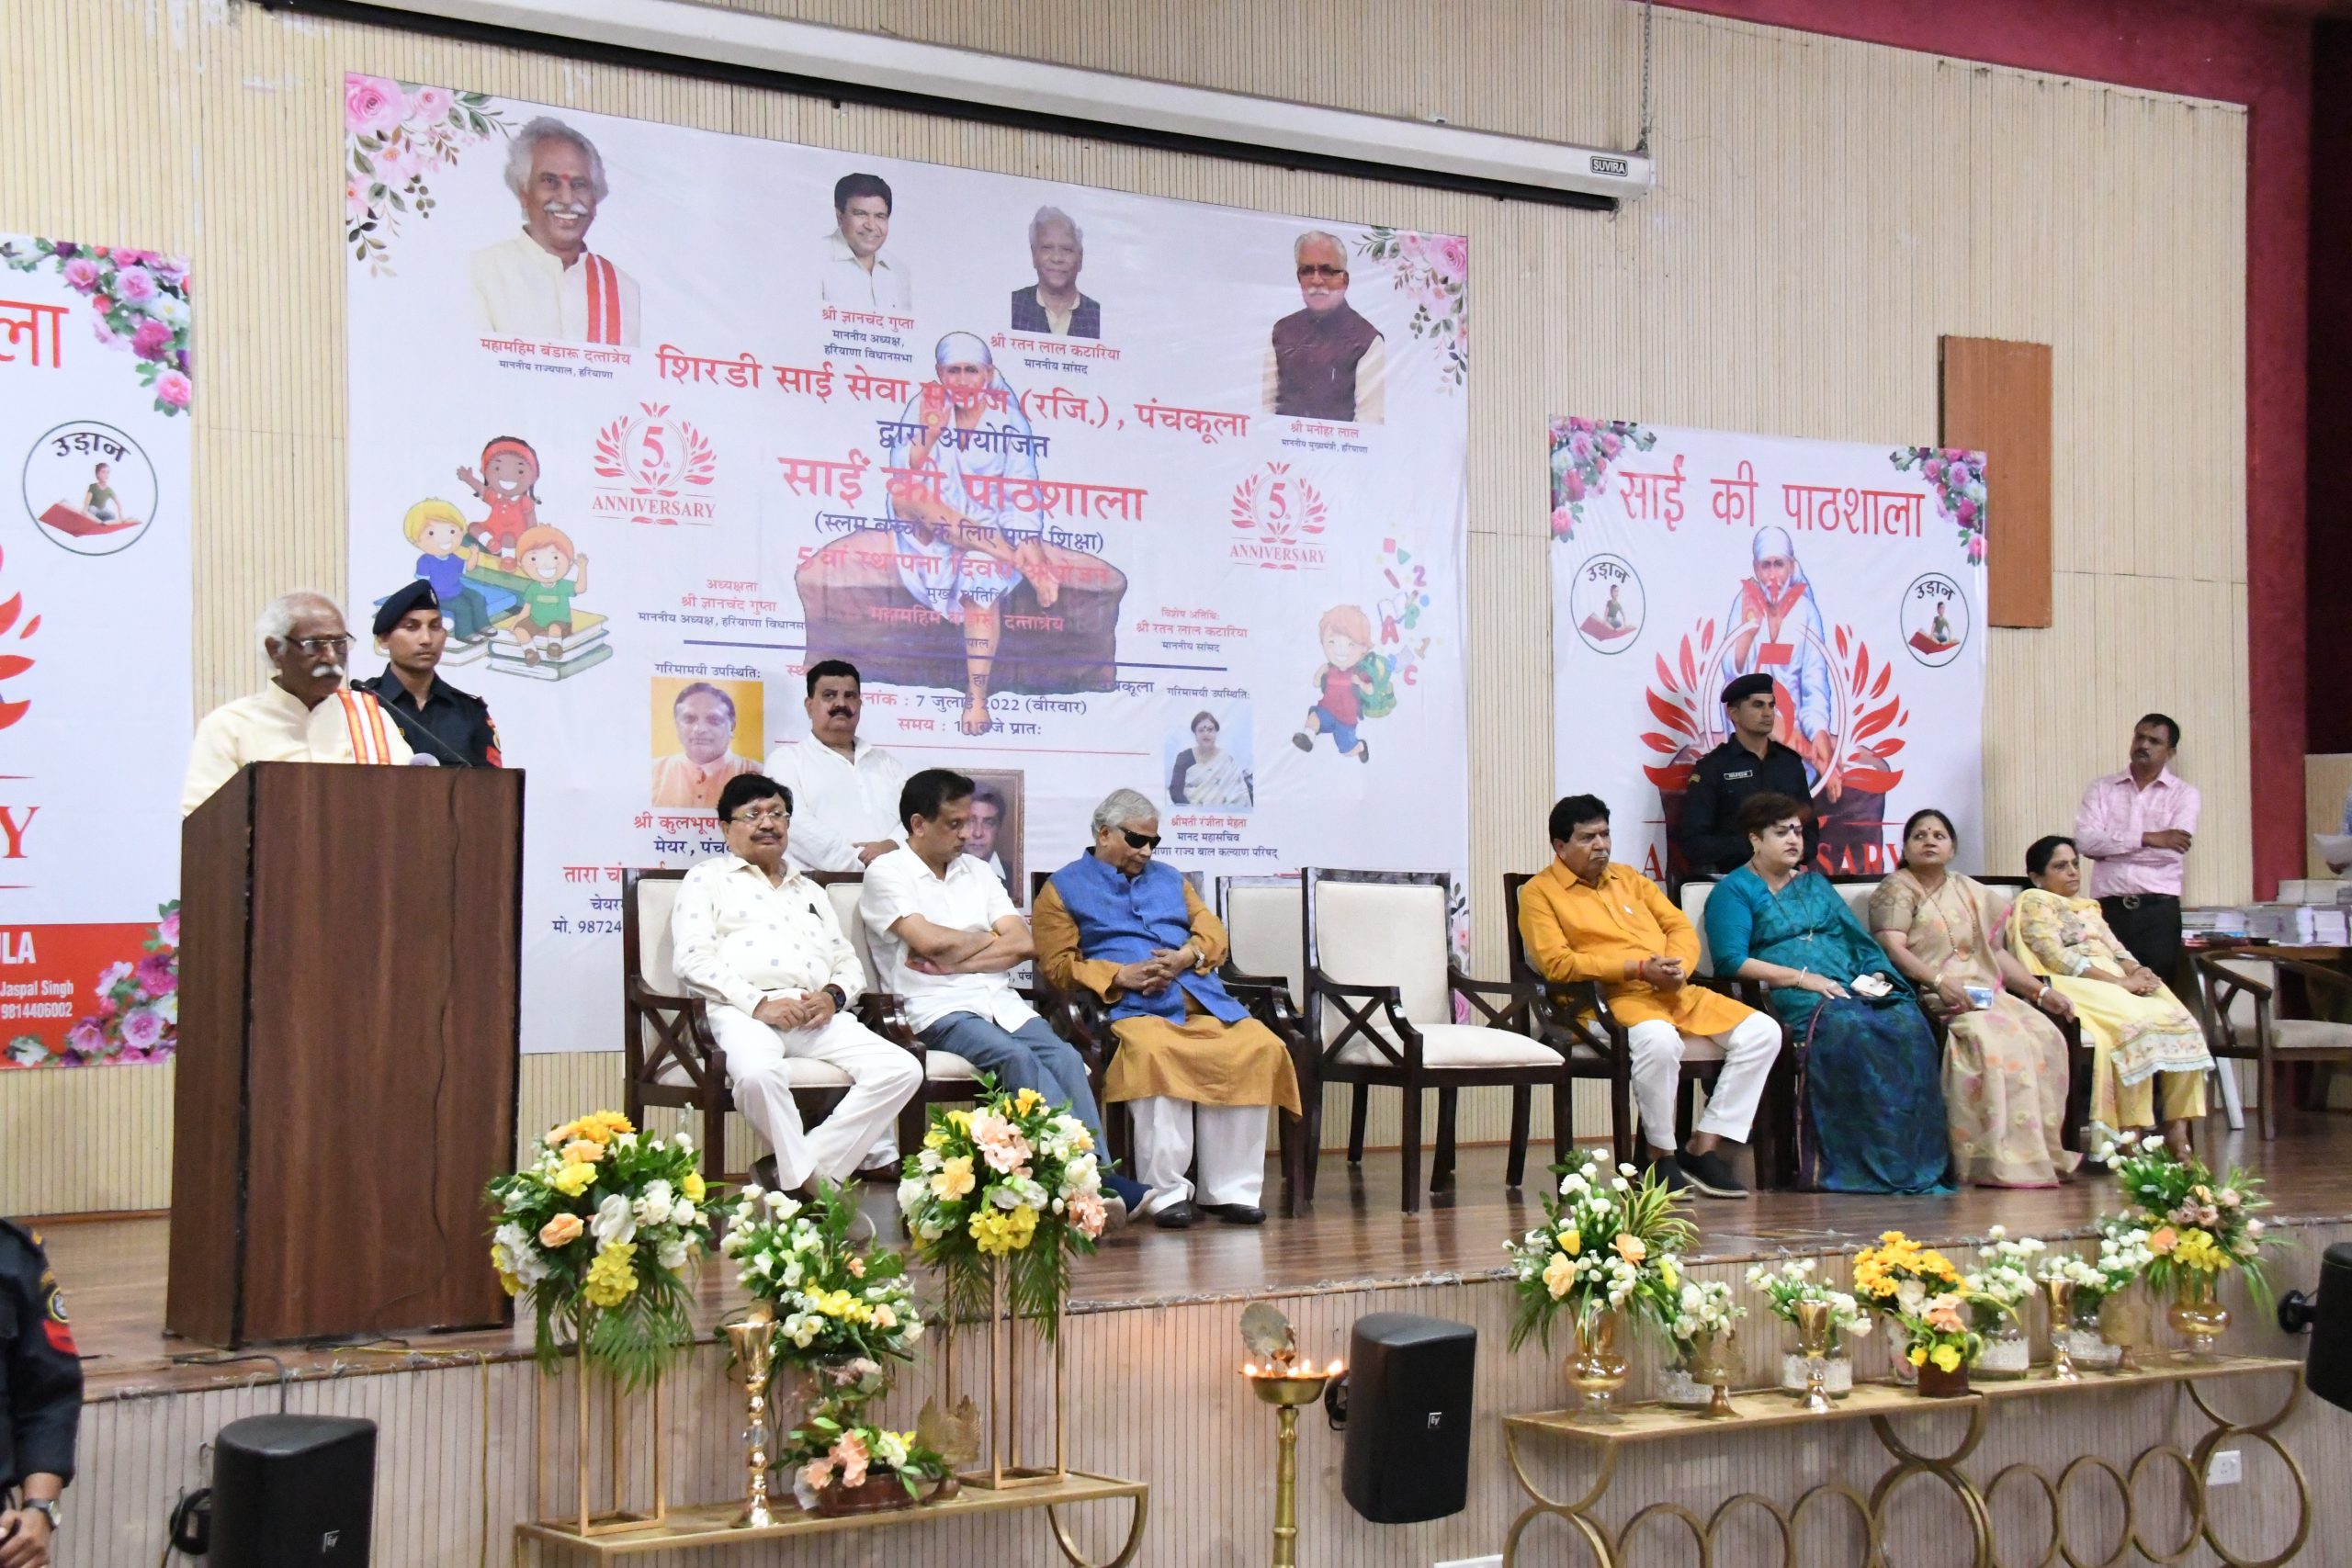 राज्यपाल श्री बंडारू दत्तात्रेय वीरवार को पंचकूला में आयोजित साईं की पाठशाला के 5वें स्थापना दिवस कार्यक्रम में सम्बोधित करते हुए